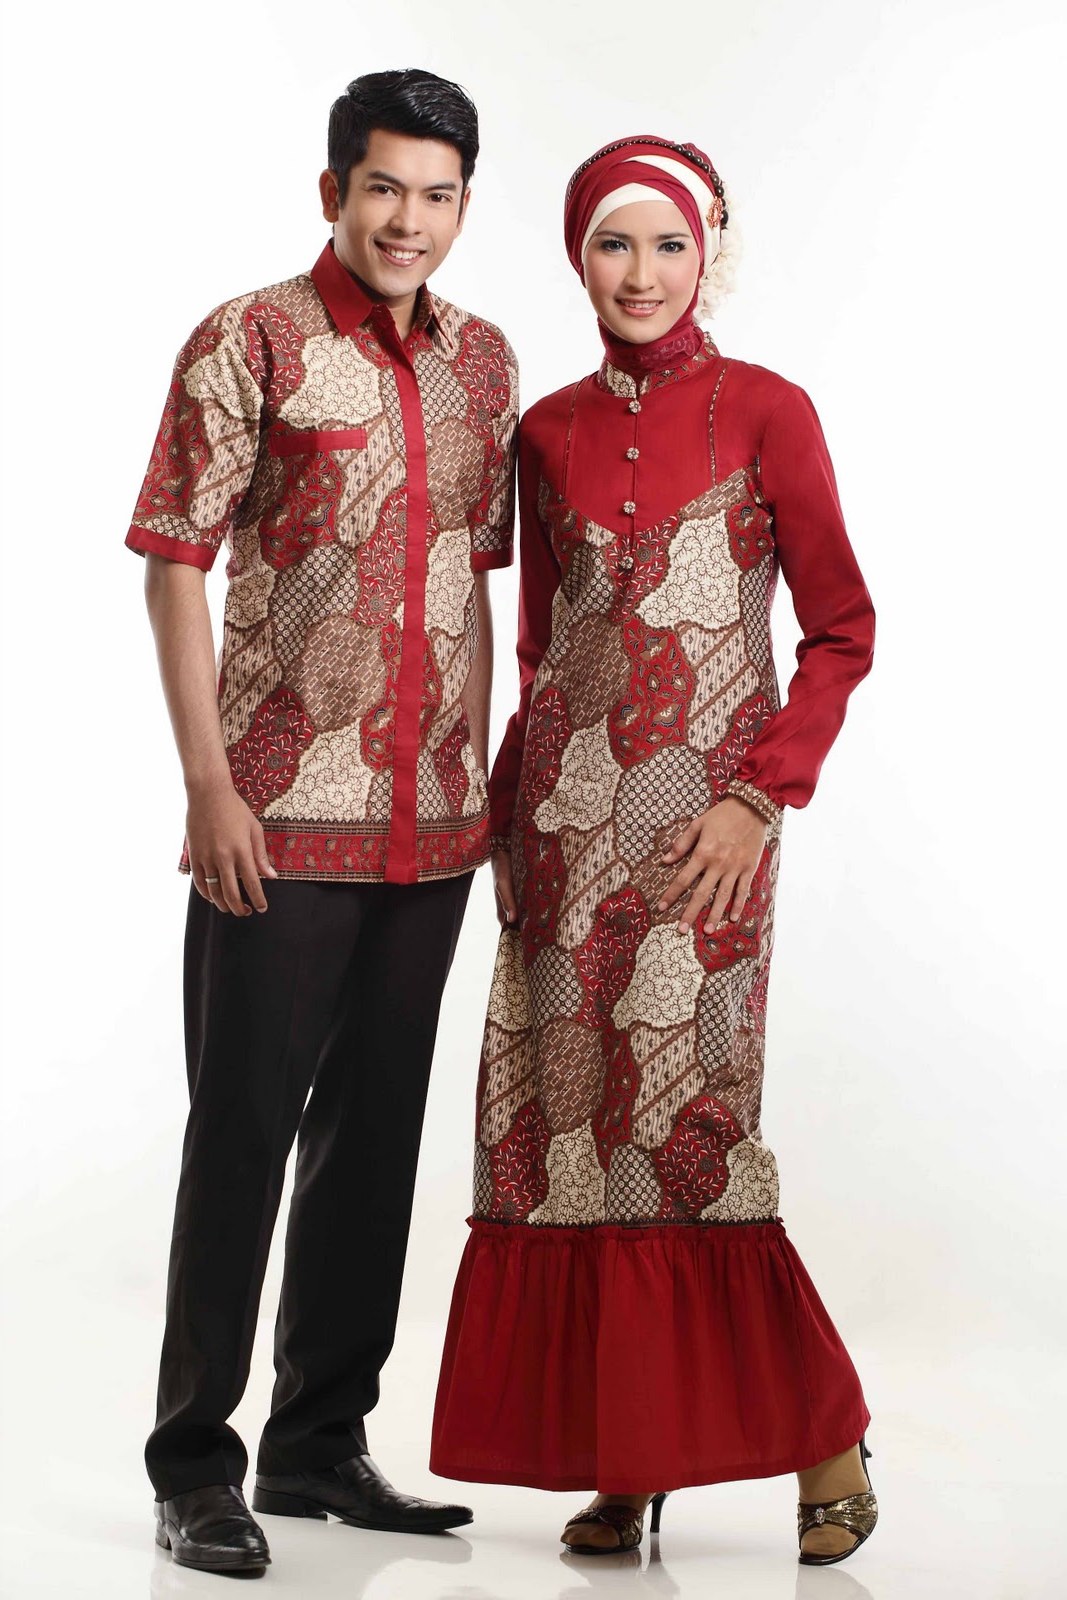 Ide Foto Baju Lebaran Terbaru Q0d4 Bintang anda Trend Model Baju Batik Lebaran Terbaru 2013